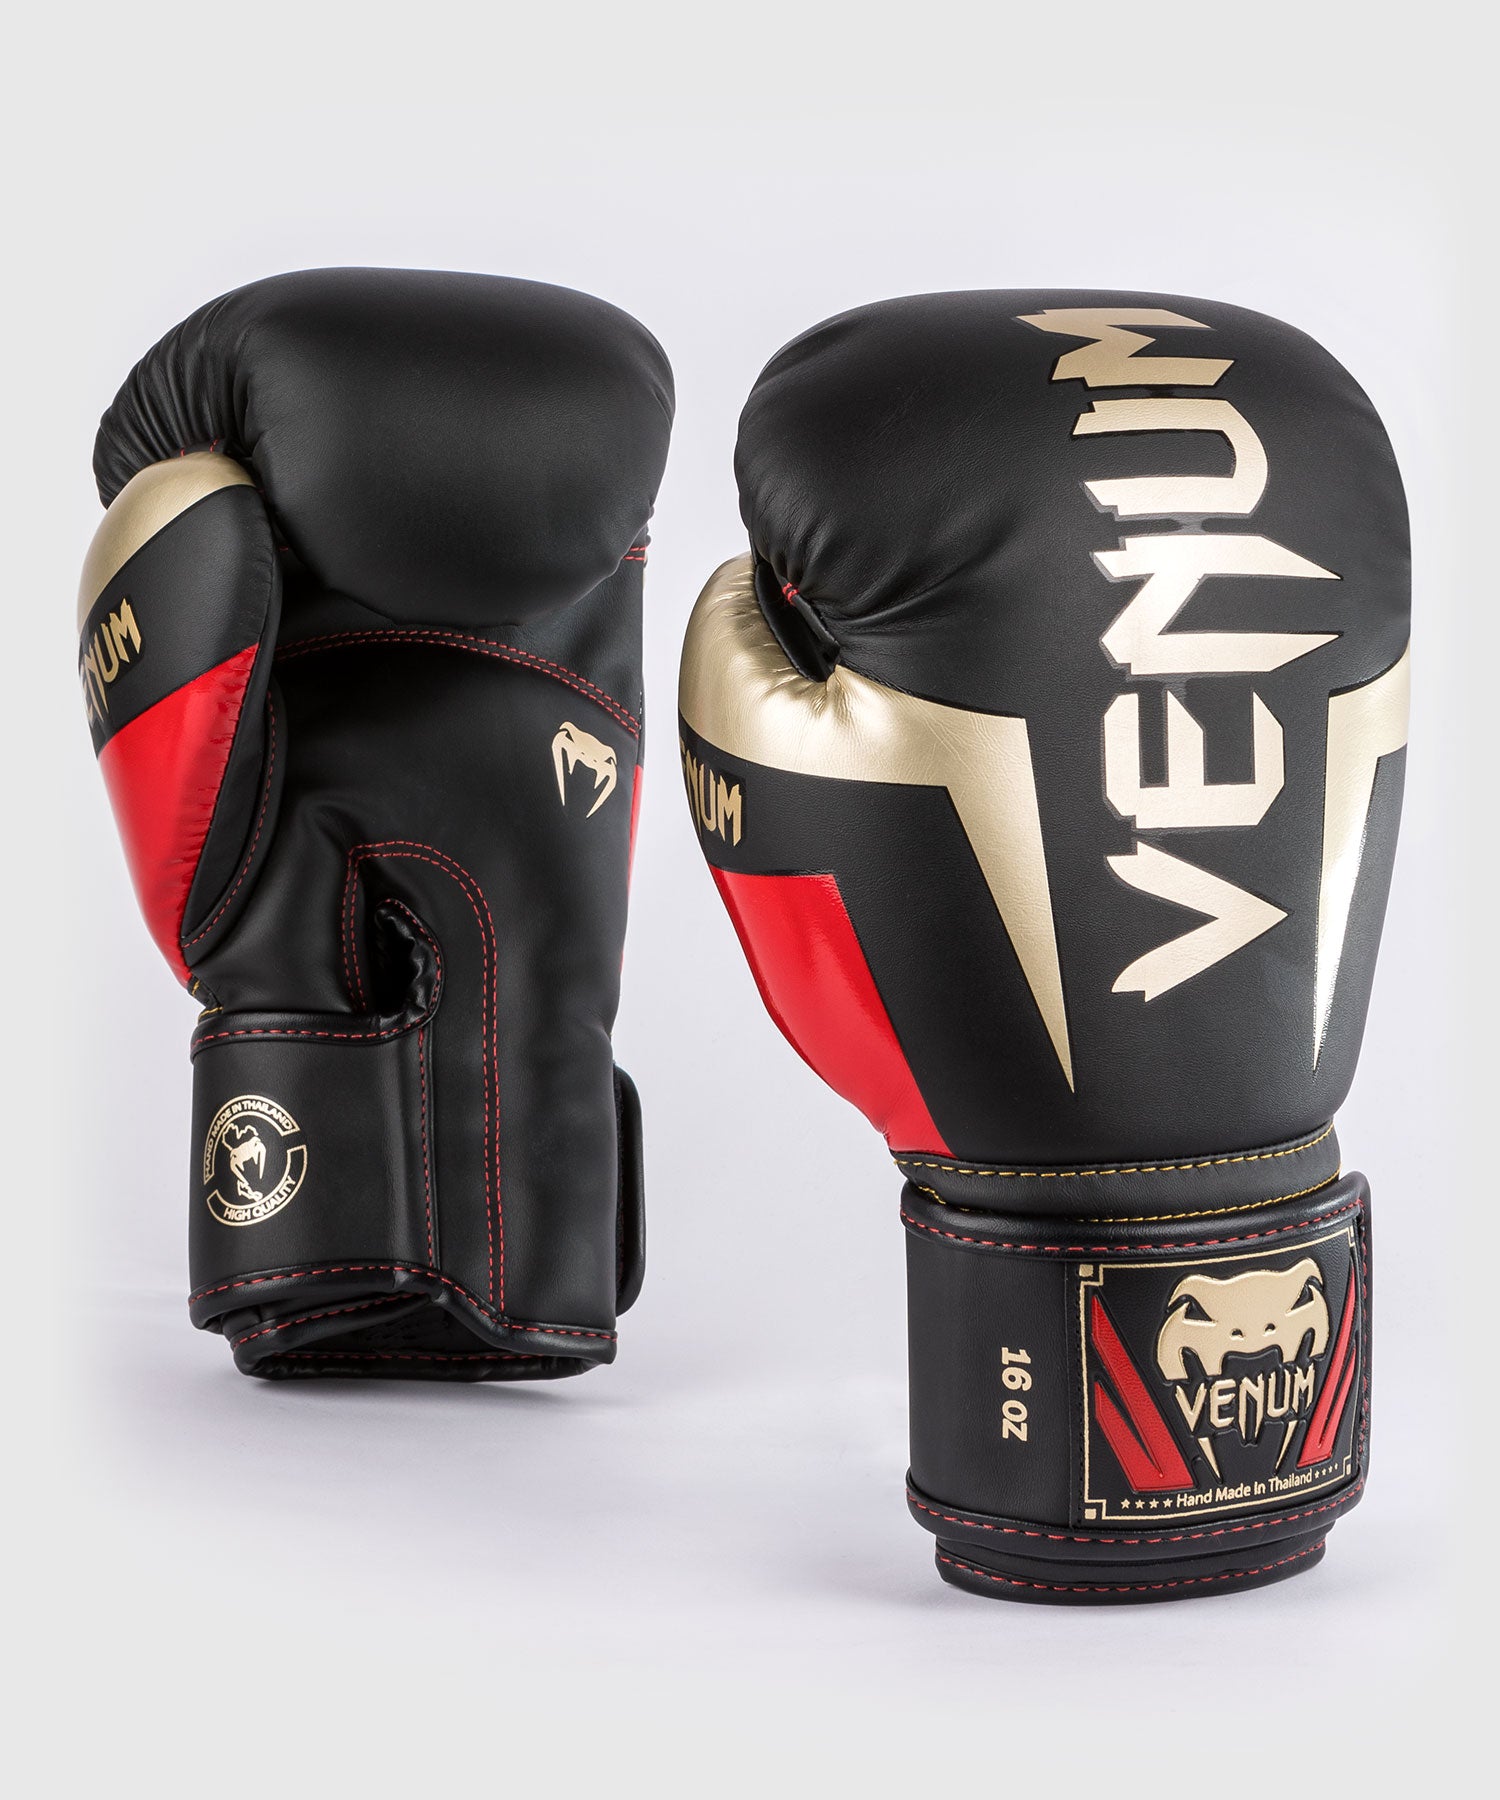 Gants de boxe enfant Venum Contender noir / rouge > Livraison Gratuite